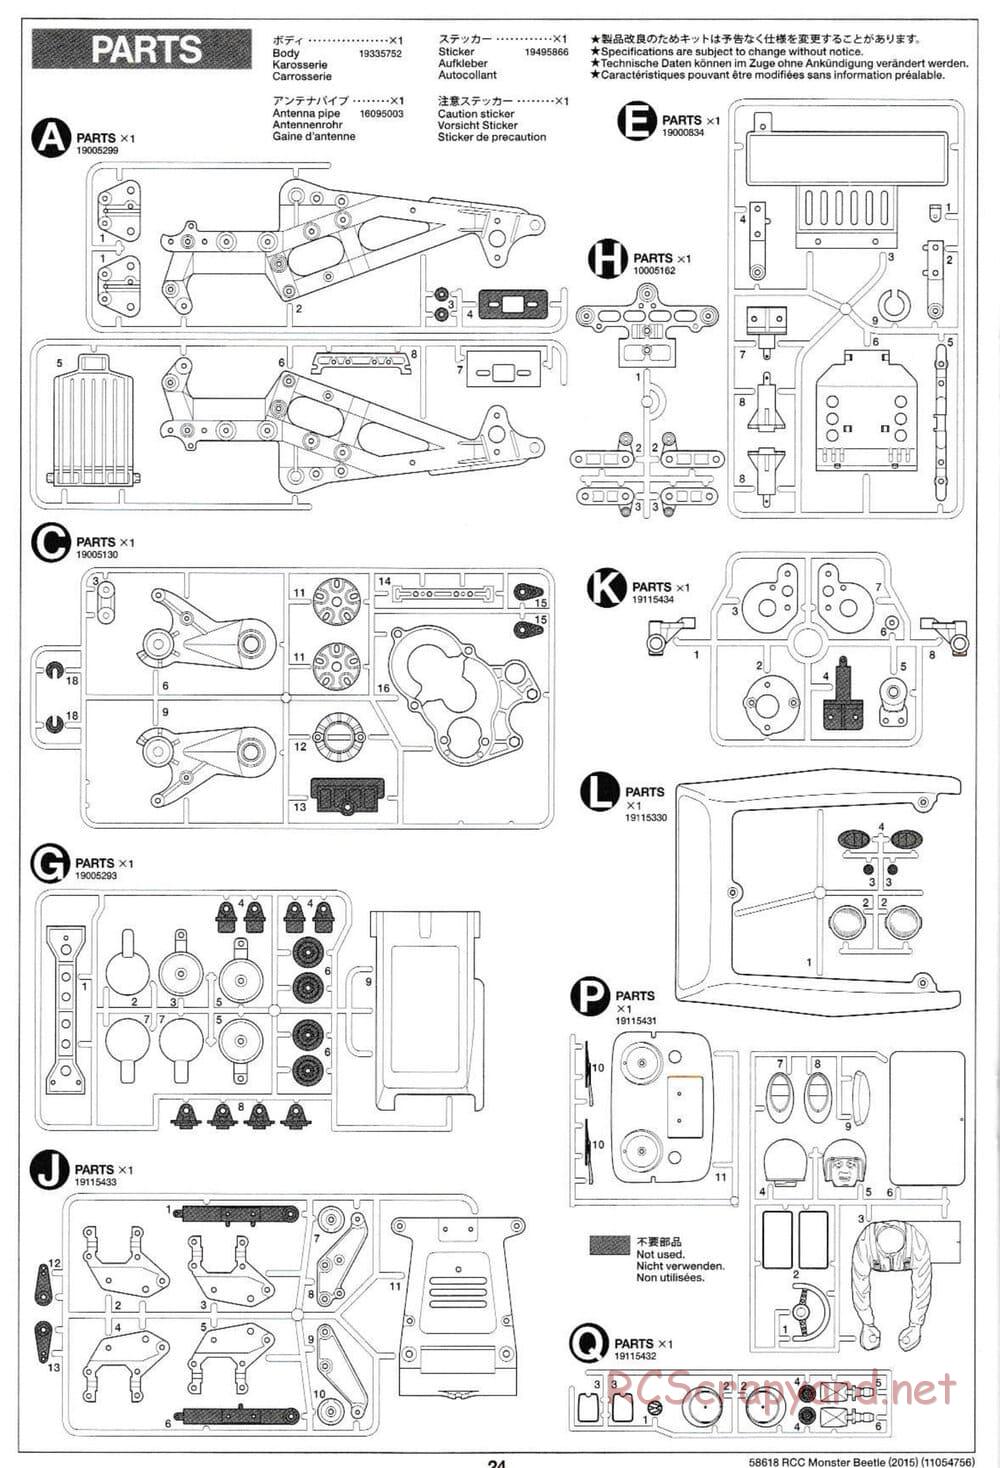 Tamiya - Monster Beetle 2015 - ORV Chassis - Manual - Page 24